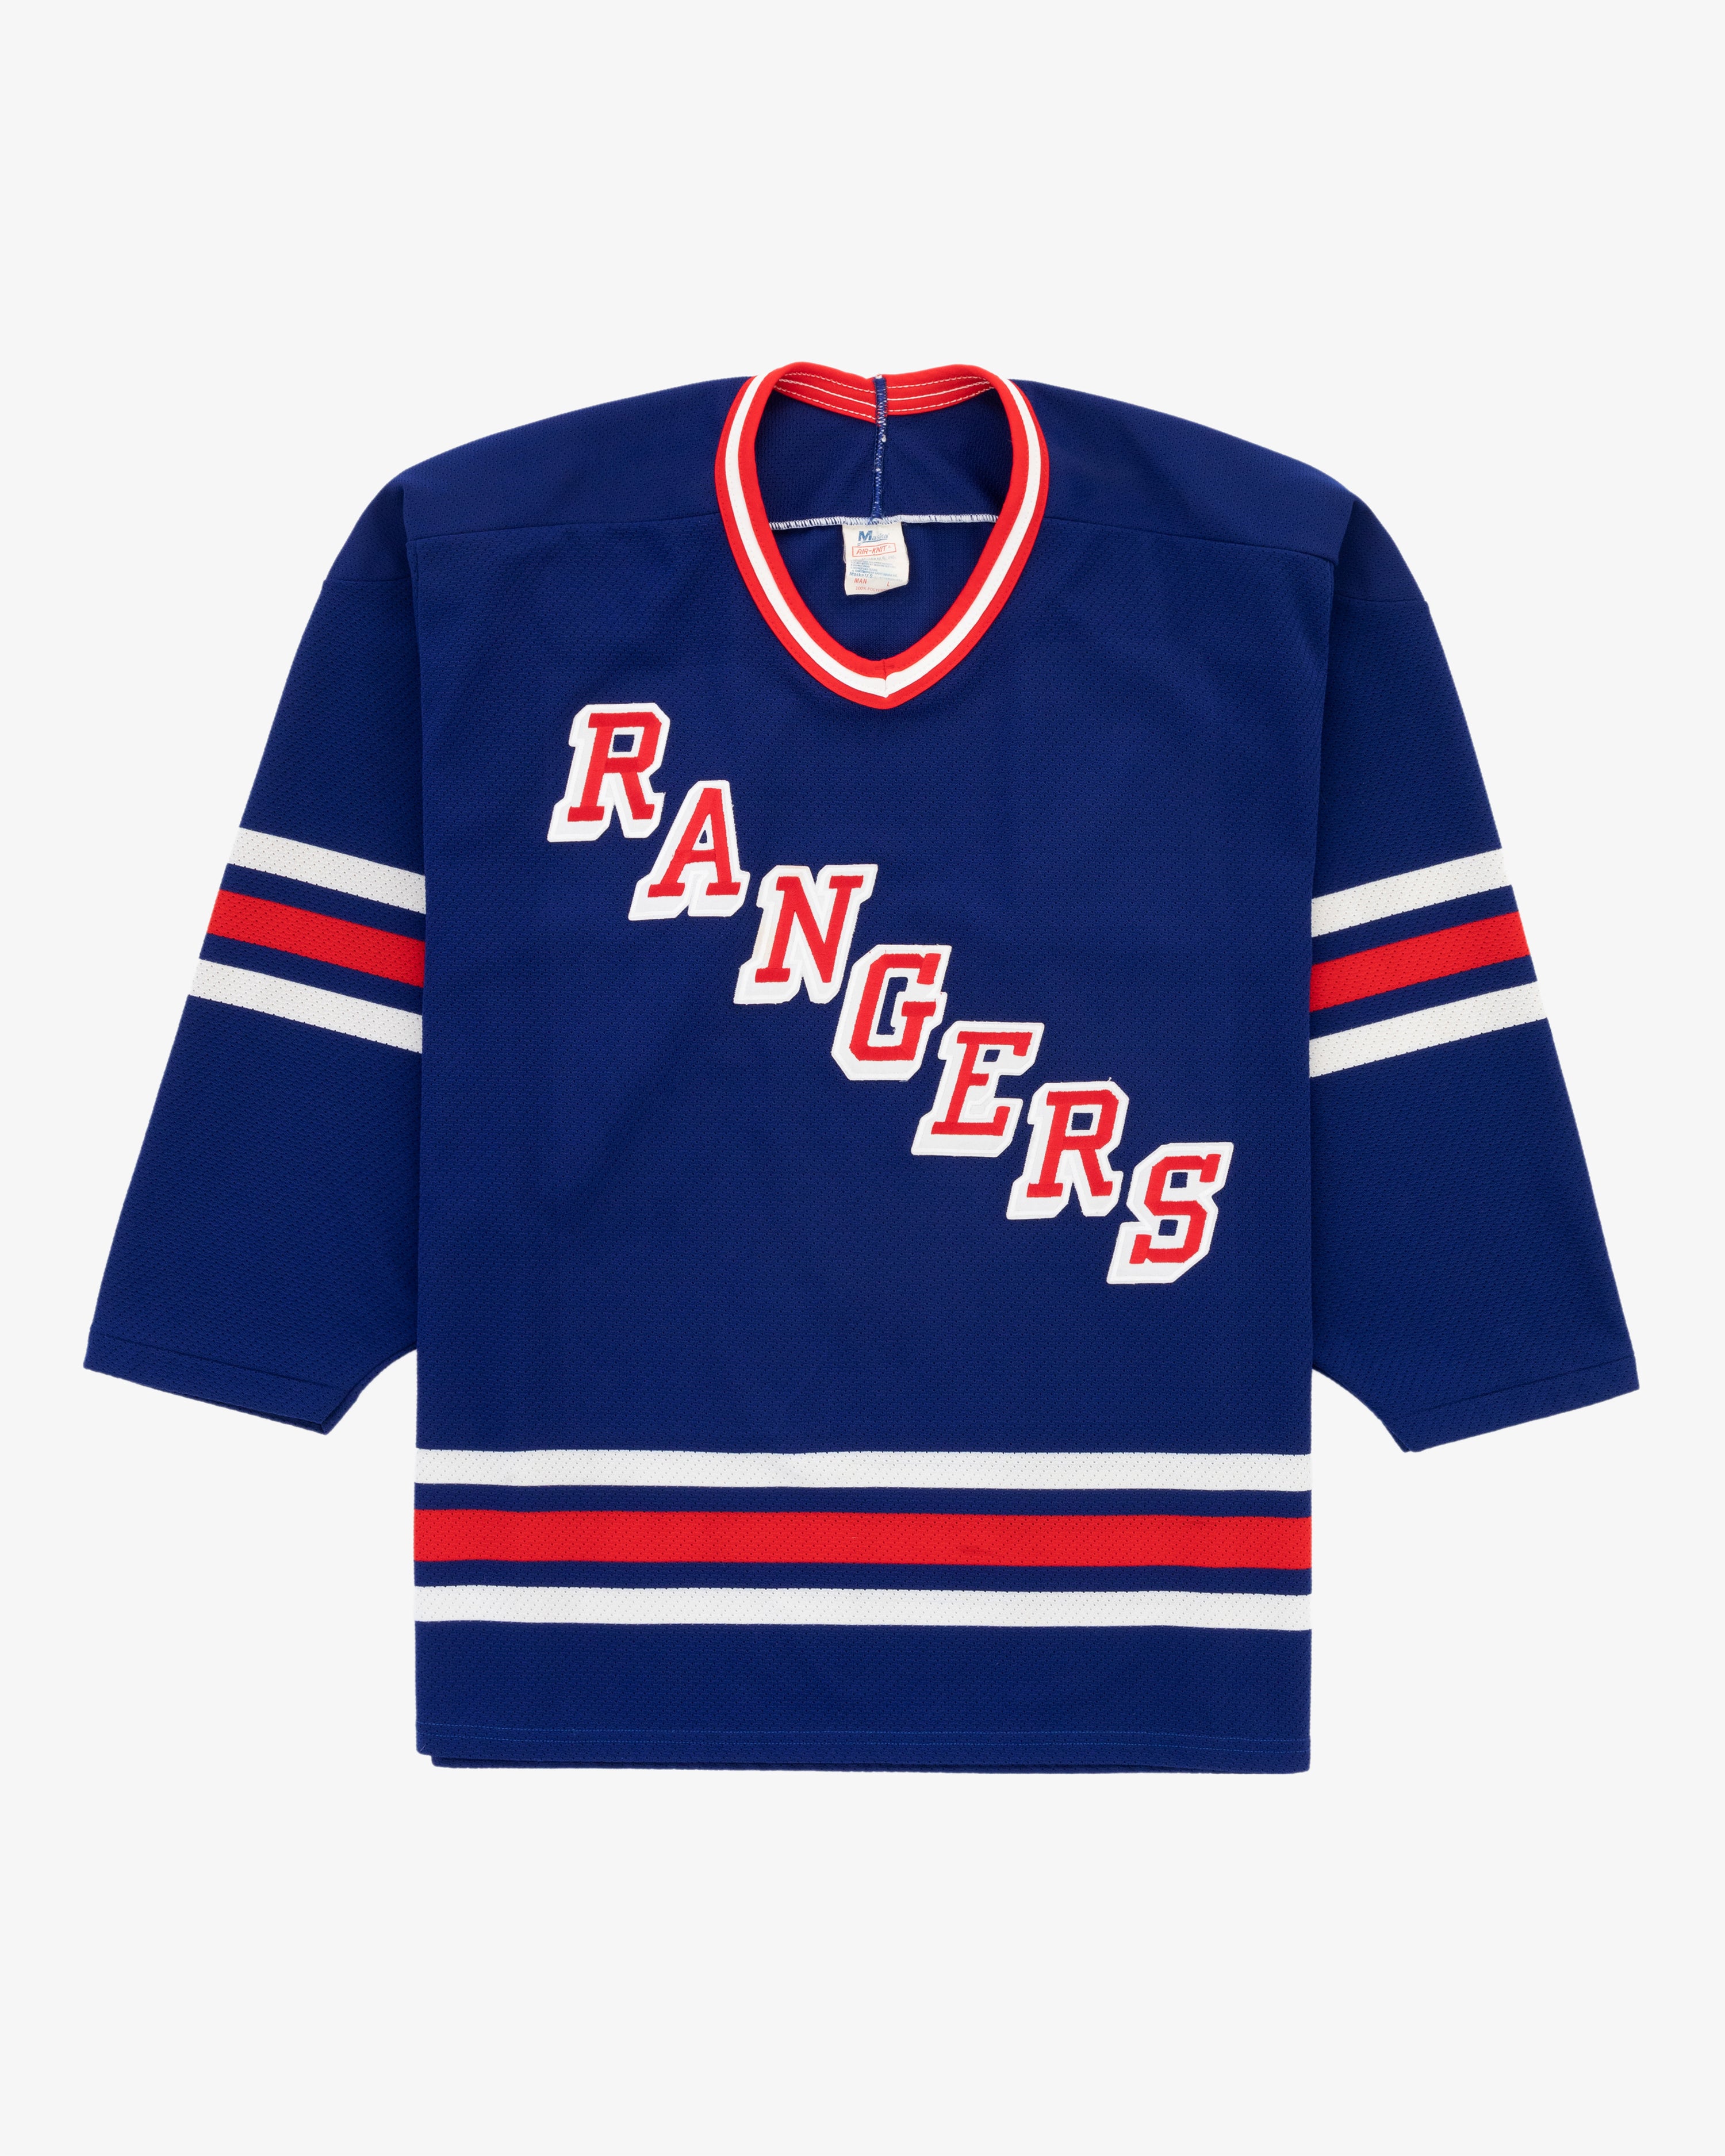 Retro new york rangers jersey